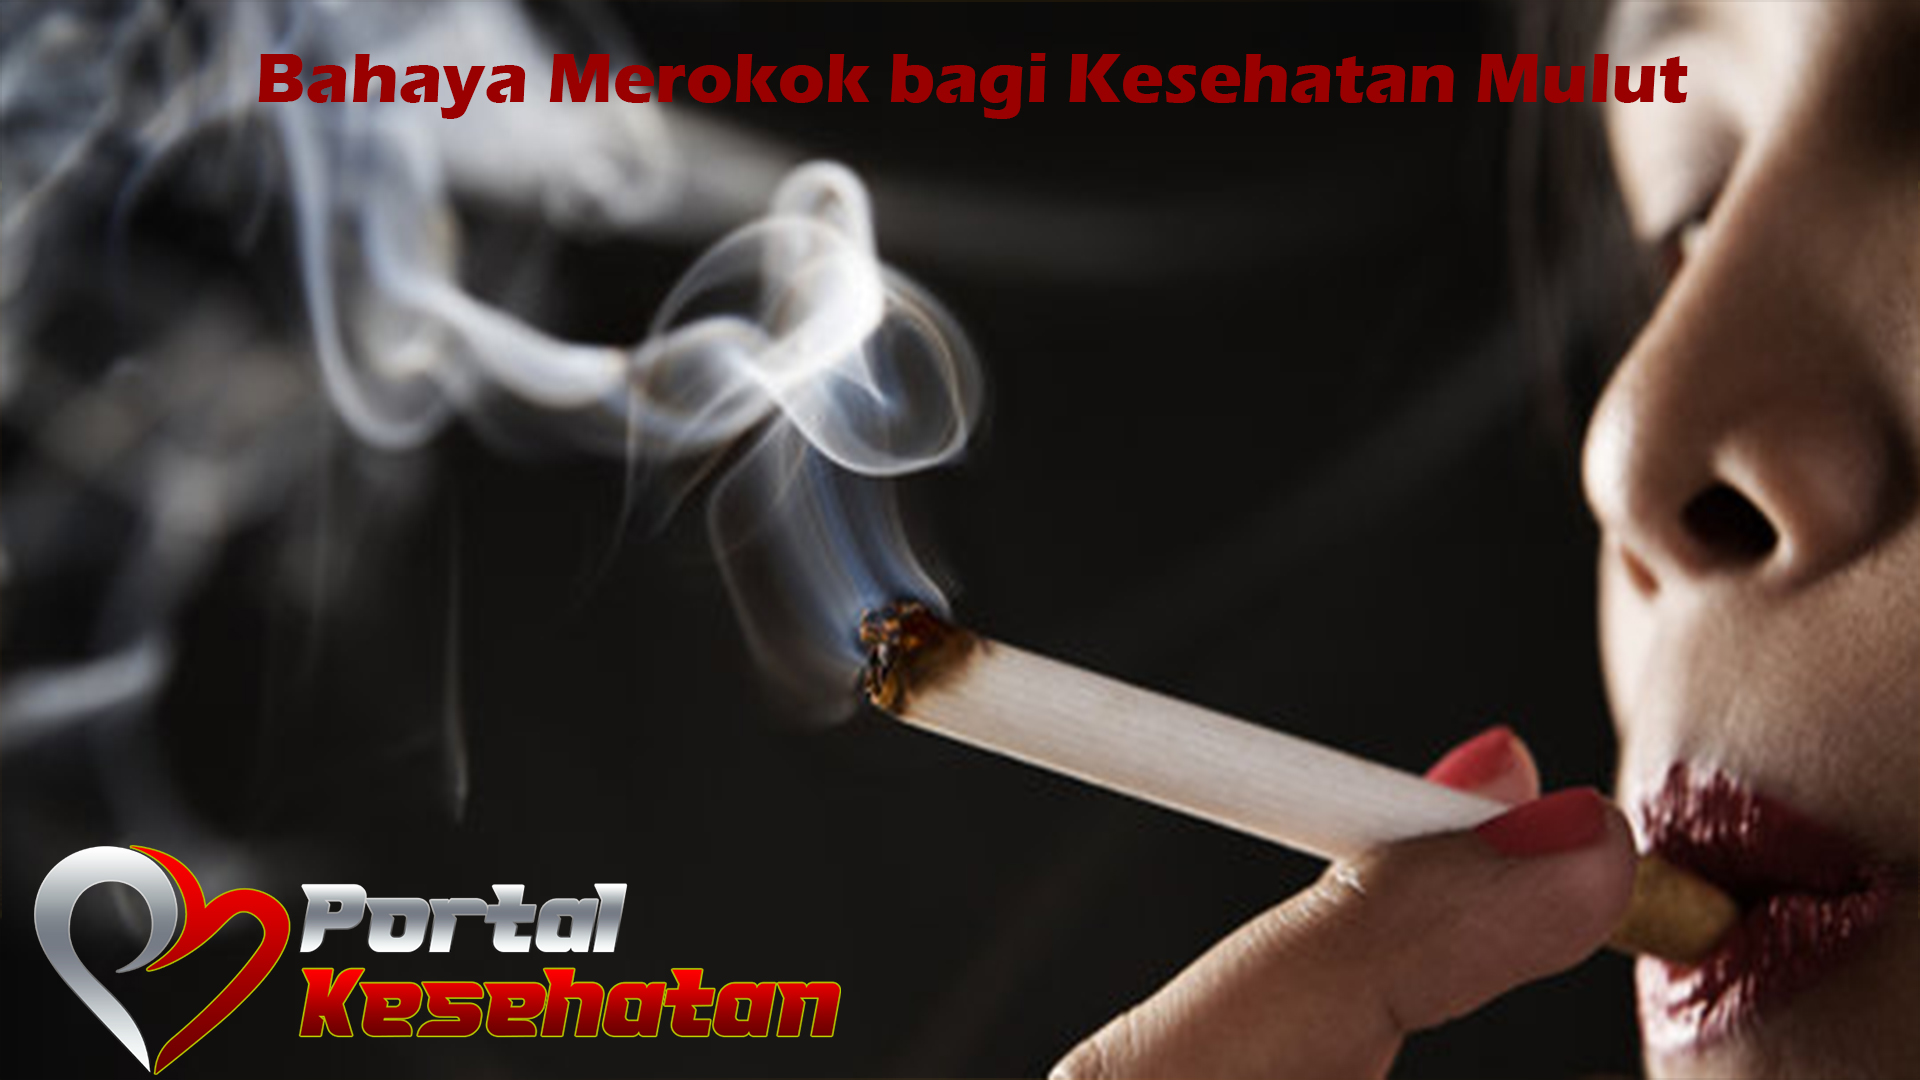 Bahaya Merokok bagi Kesehatan Mulut